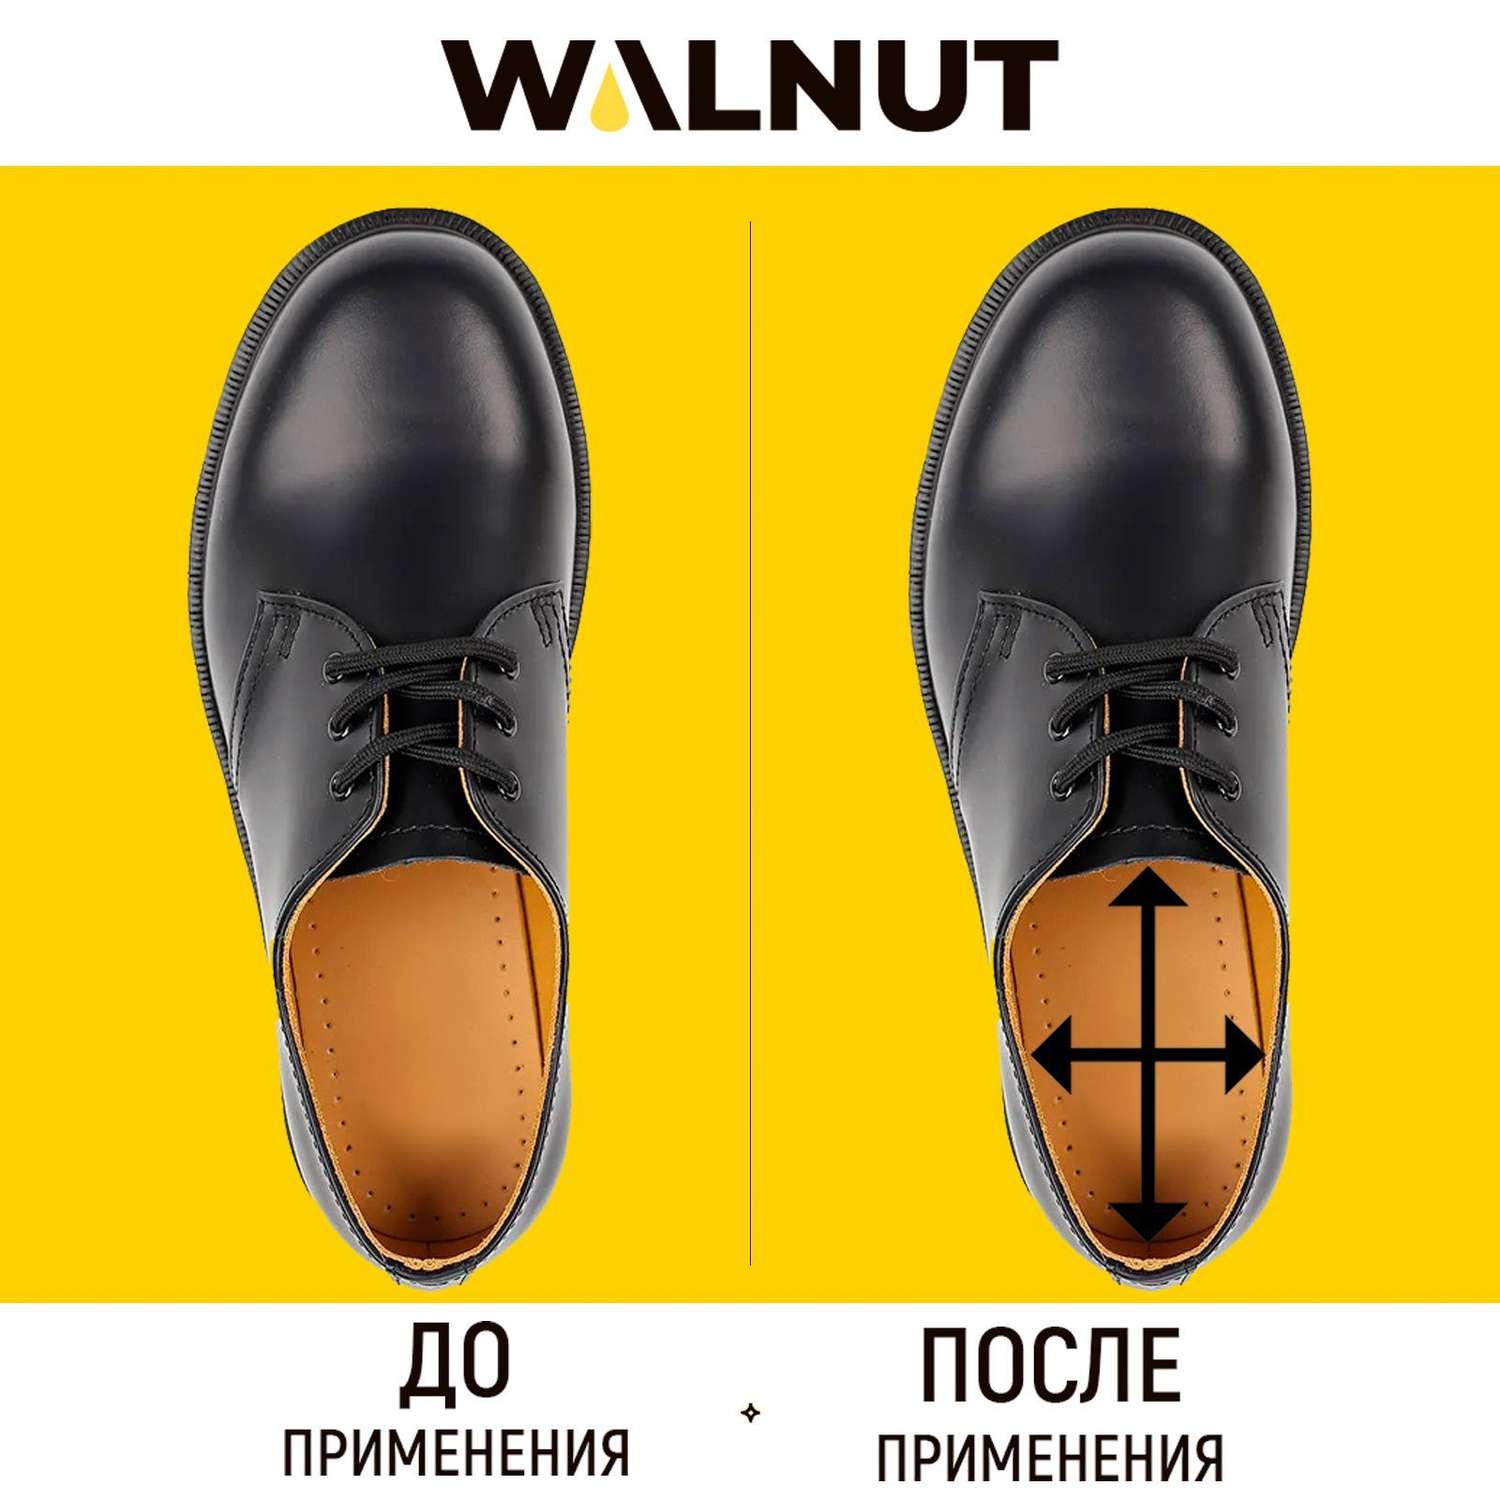 Спрей для растяжки обуви WALNUT WLN0007 WLN0007 - фото 6